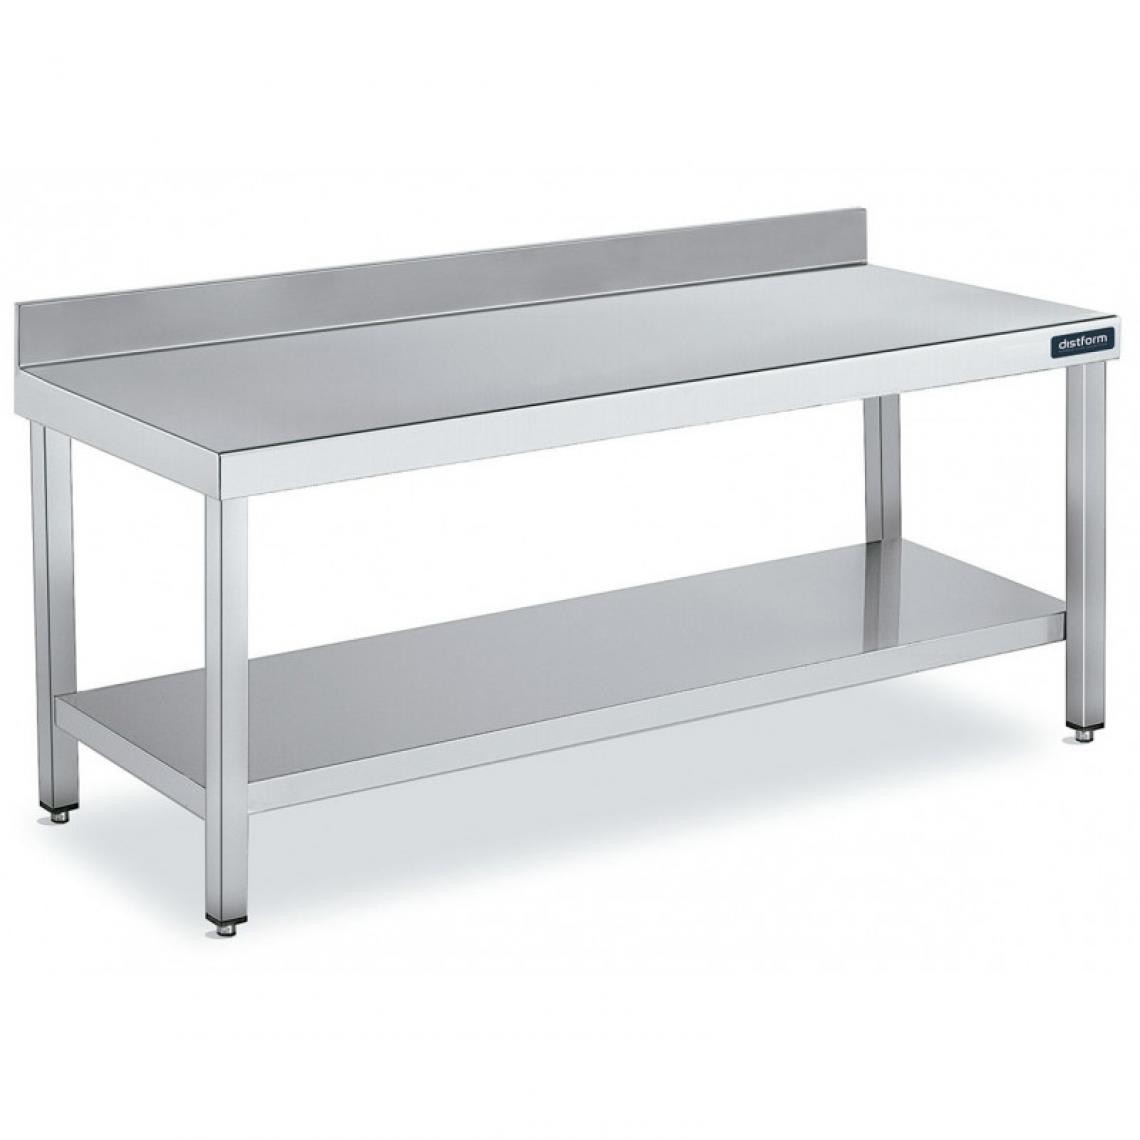 DISTFORM - Table Adossée en Inox avec 1 étagère Profondeur 700 mm - Distform - Acier inoxydable2600x700 - Tables à manger